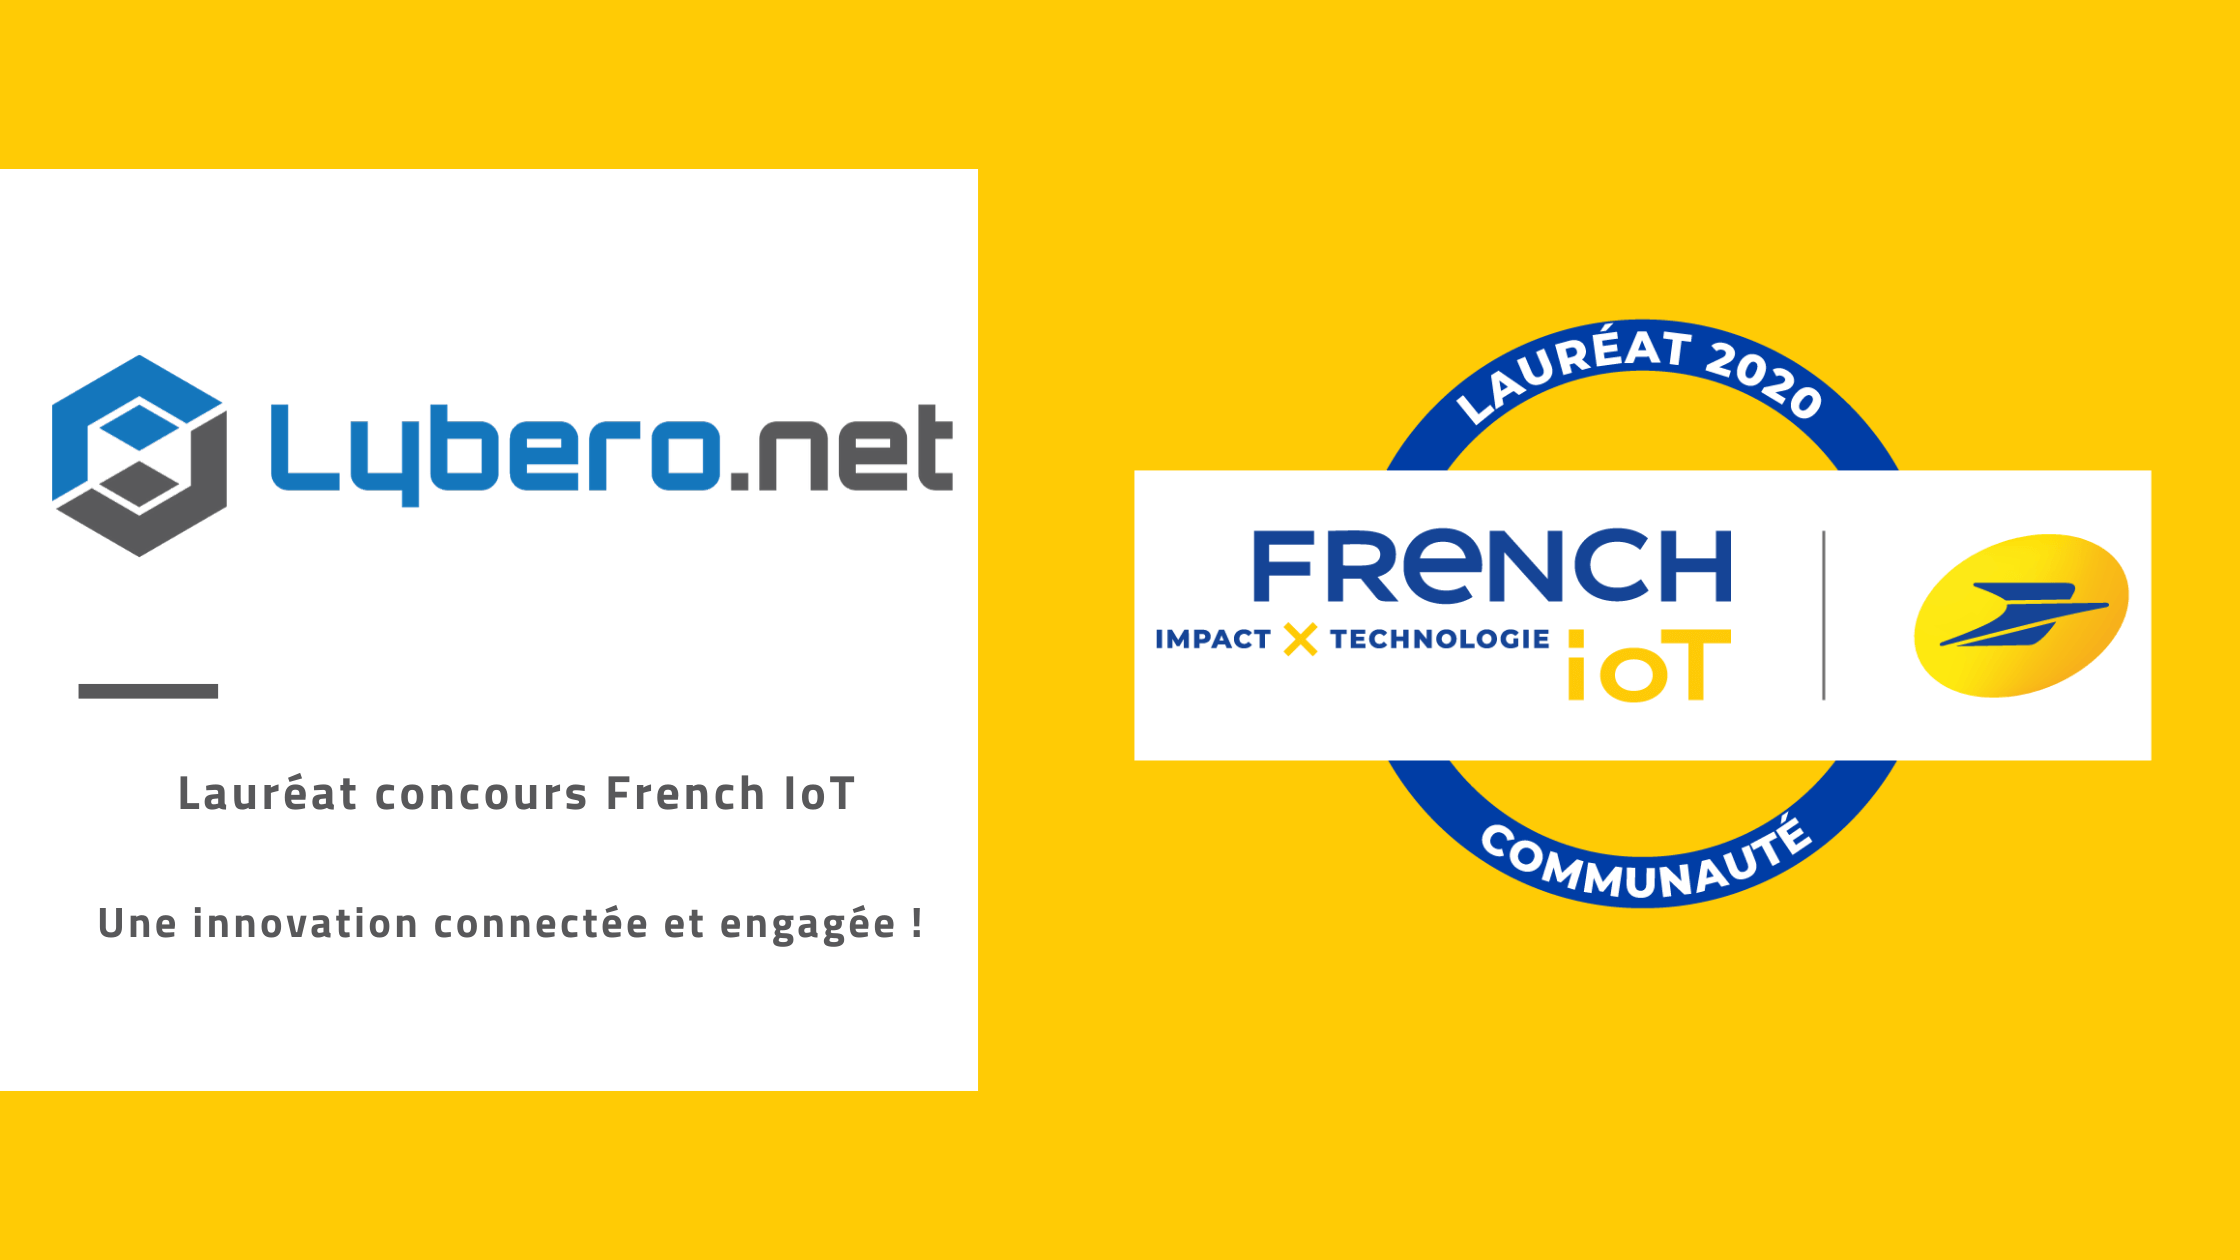 Lybero.net lauréat concours La Poste French IoT